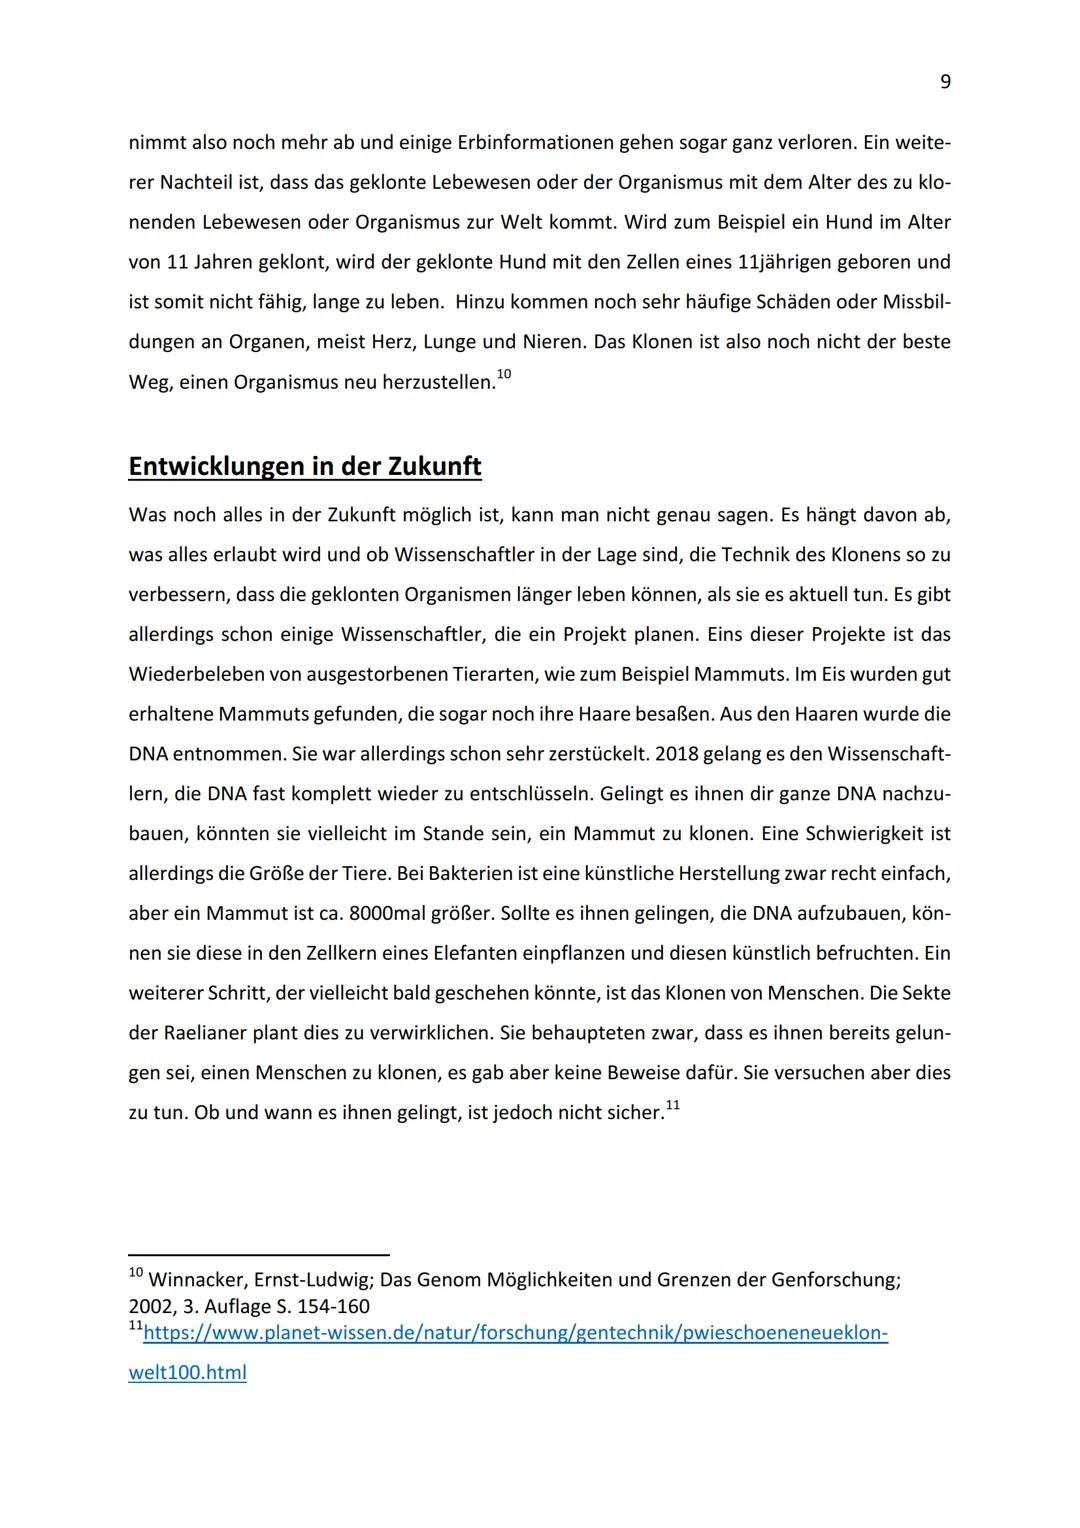 2019/20
Klonen-Anfänge, Gegenwart und Zukunft
10b
04.02.2020 1.
II.
III.
Einleitung
Anfänge
A. Erste Untersuchungen und Anwendungen
B. Dolly